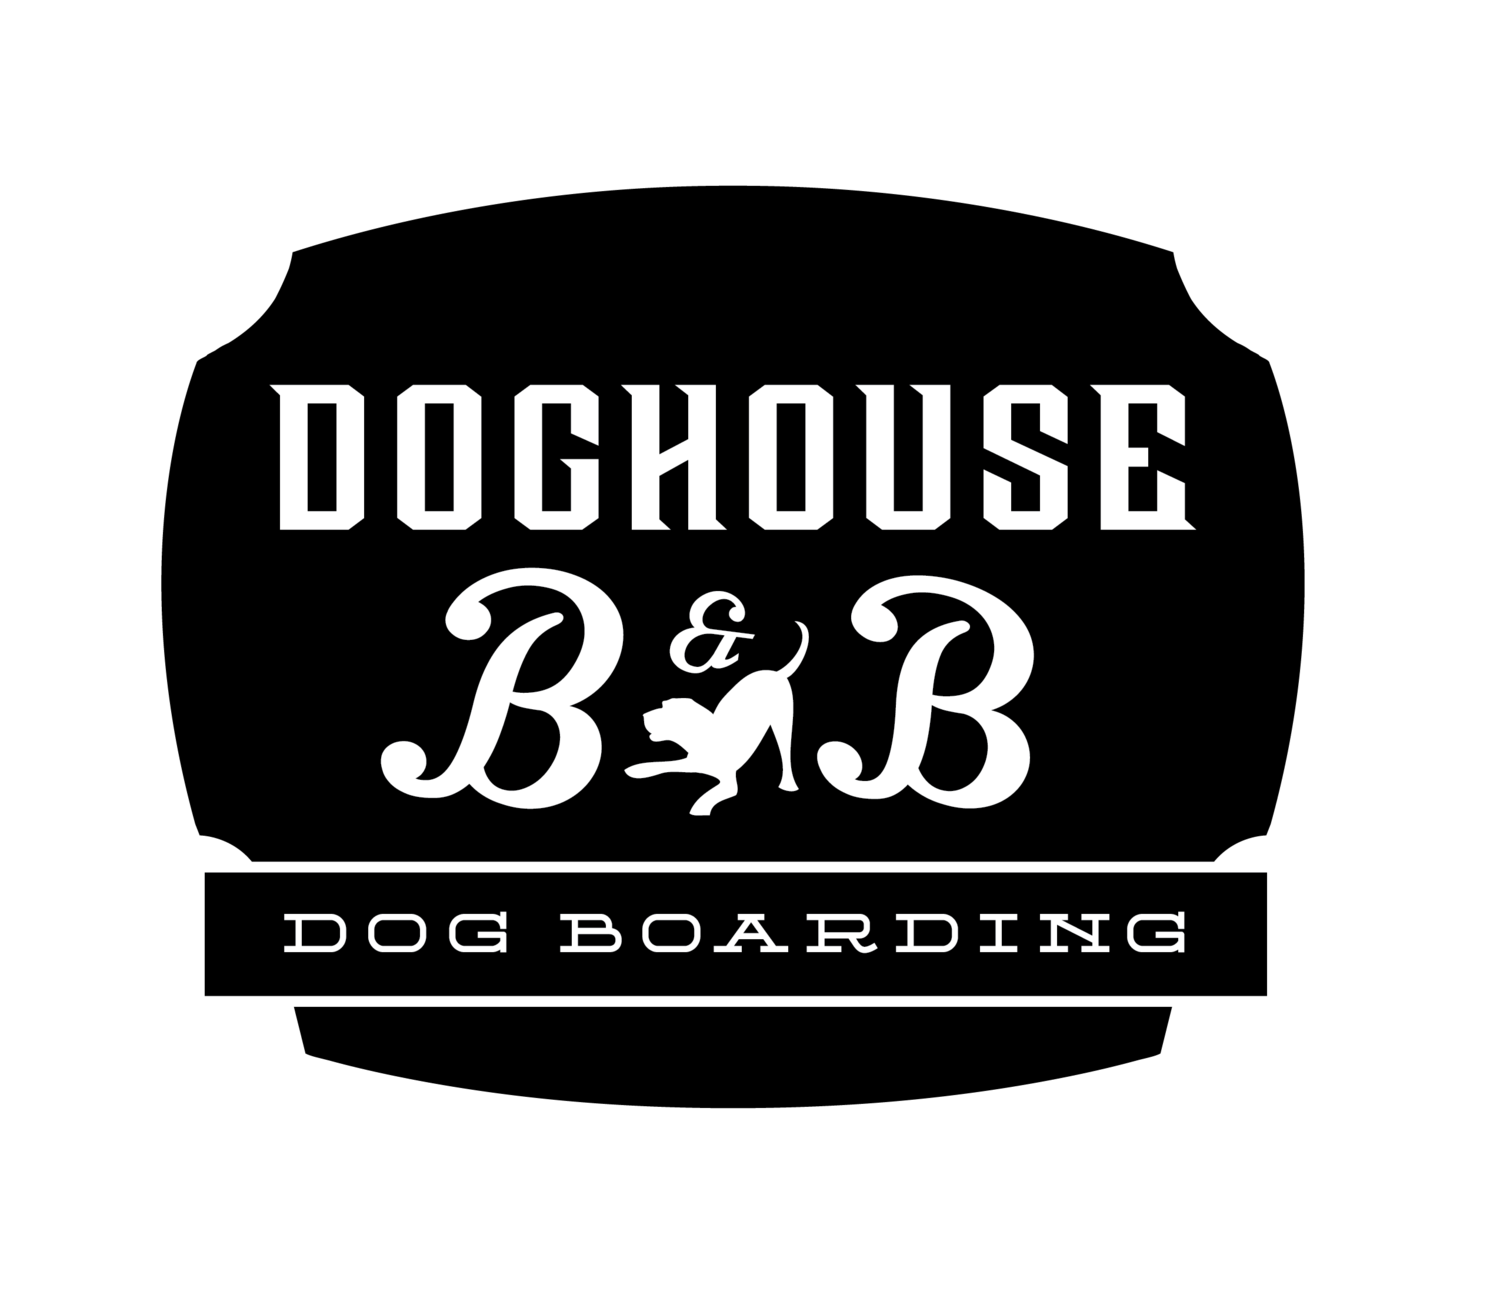 DOG HOUSE B&B